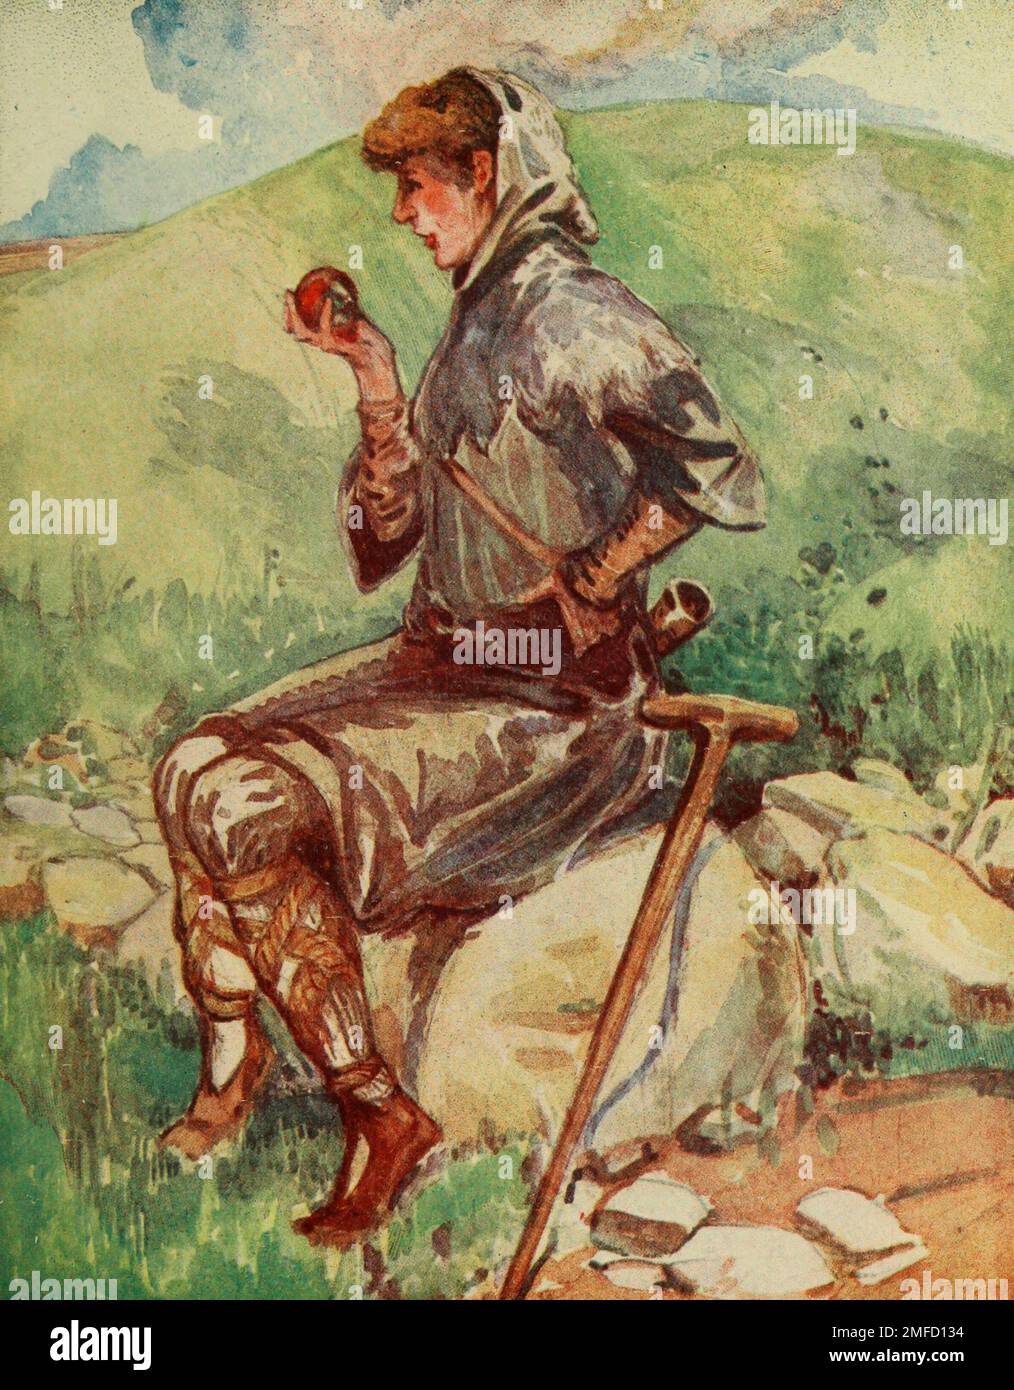 Paysan du début de l'Angleterre (William I - Henry III) sa cagoule est faite de peau de mouton, la laine à l'extérieur, l'ourlet découpé en points. Ses jambes sont reliées par des jarres de paille tressée. Ses chaussures sont de la plus grosse fabrication de cuir grossier. Il a la corne du berger claquant sur son épaule à partir du livre « English Costume » de Dion Clayton Malthrop, 1878-1937 Date de publication 1907 Éditeur London, A. & C. Black Banque D'Images